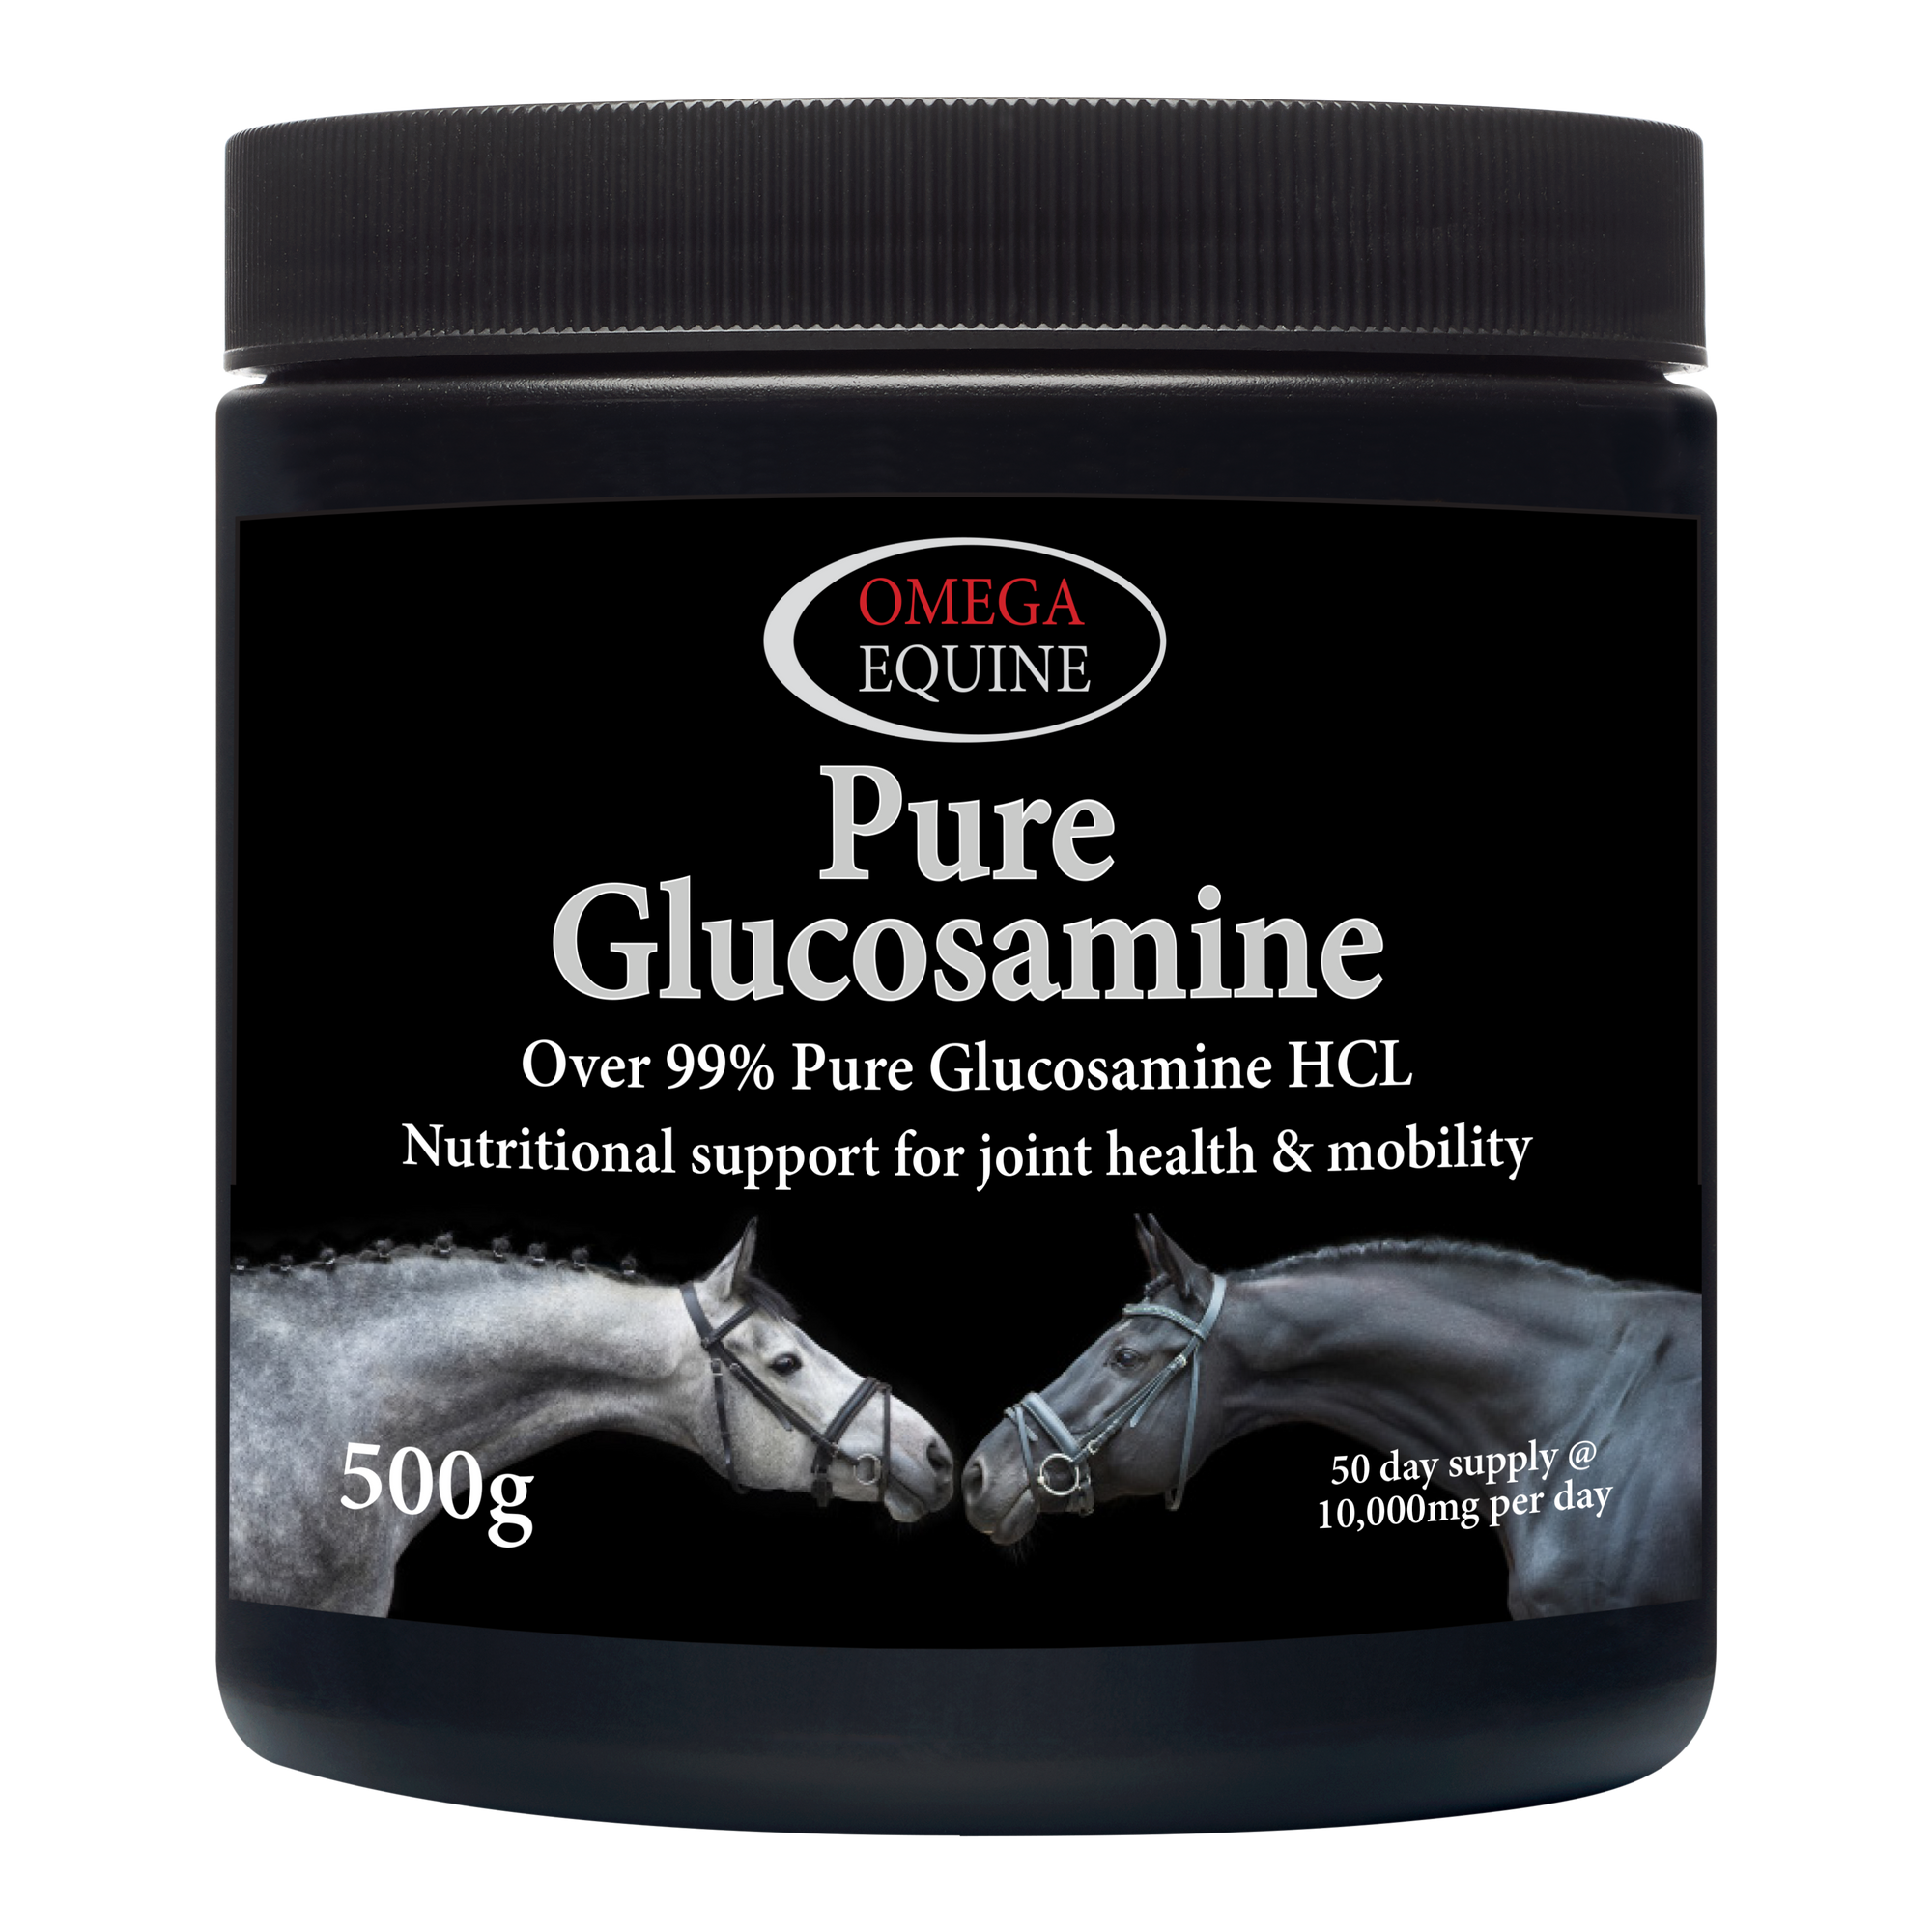 Omega Pure Glucosamine